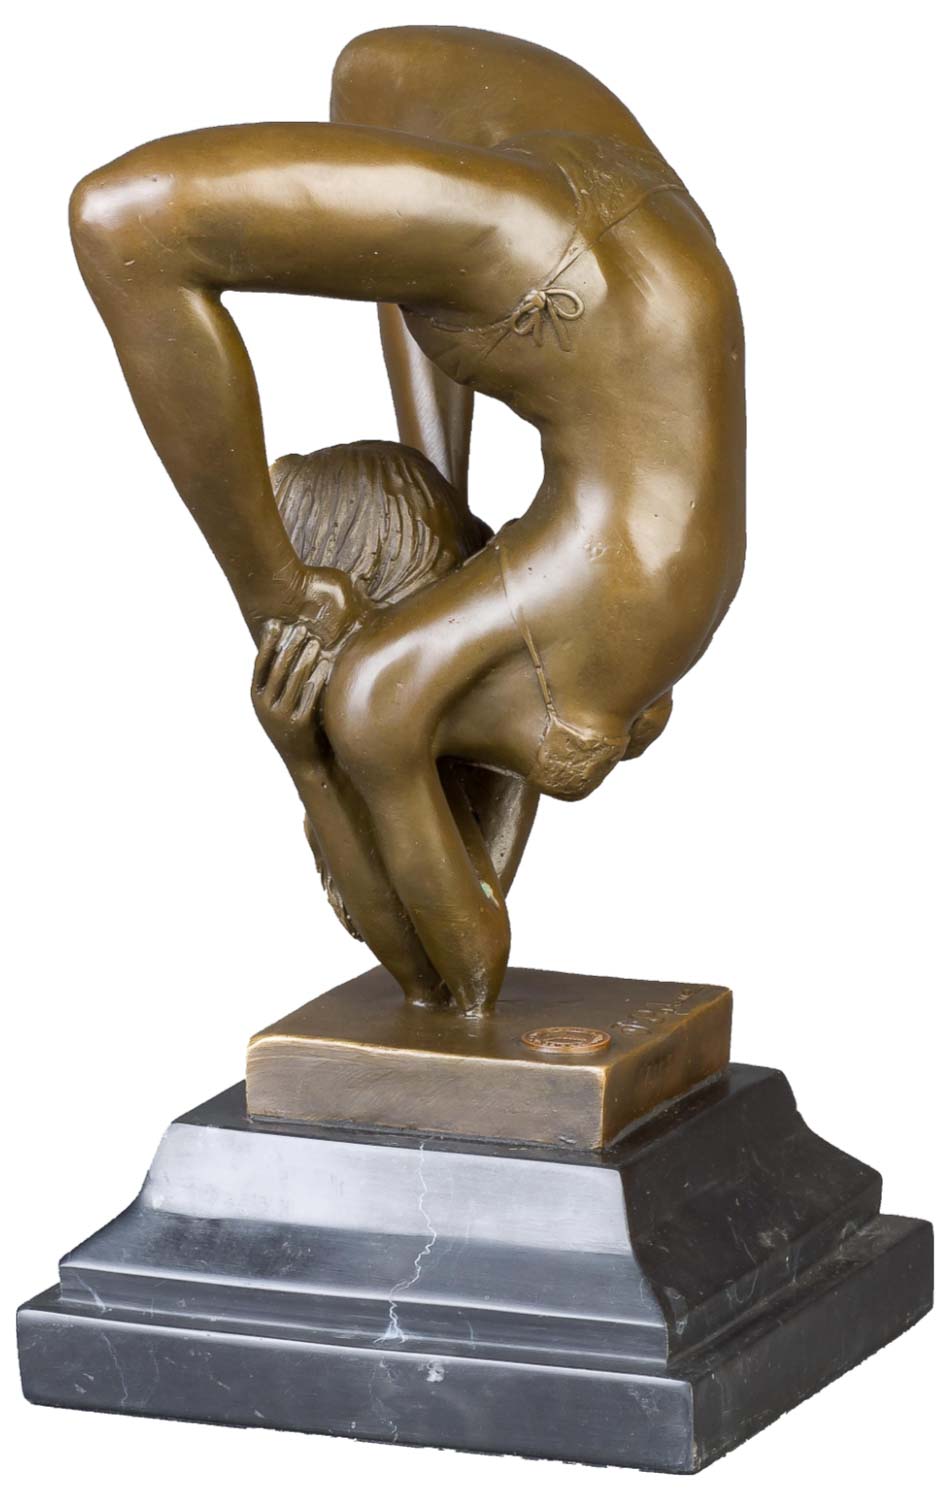 Bronzeskulptur Schlangenmensch Yoga Frau im Antik-Stil Bronze Figur Statue 22cm 